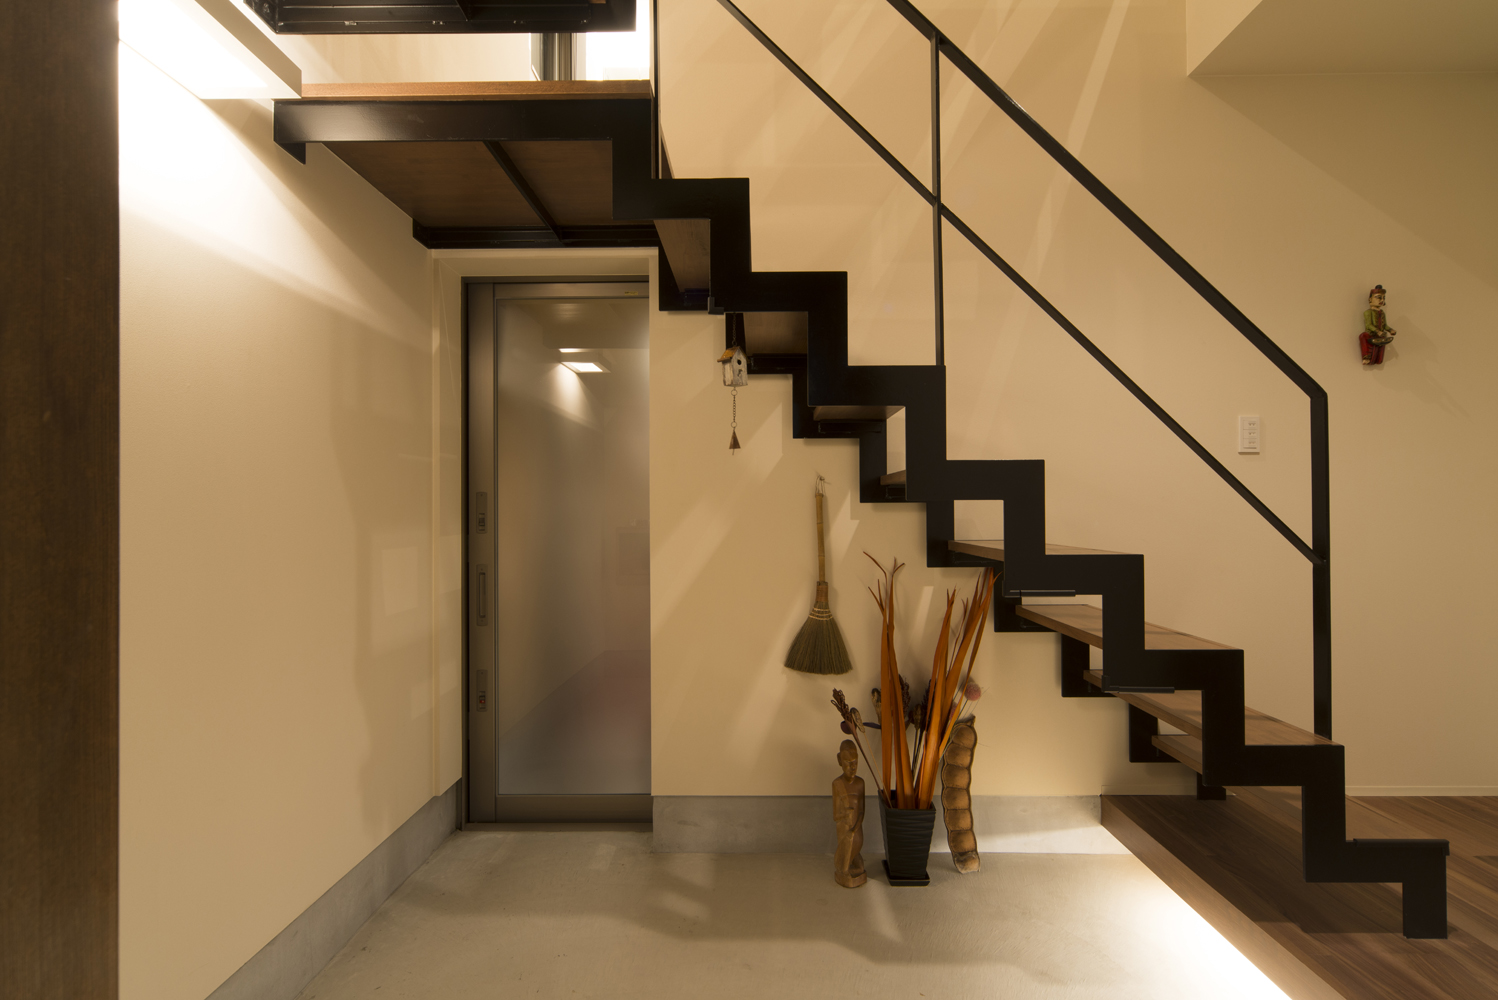 階段と玄関ドアの空間バランスがよい アジアンテイストを含んだ玄関ホール Fevecasa フェブカーサ